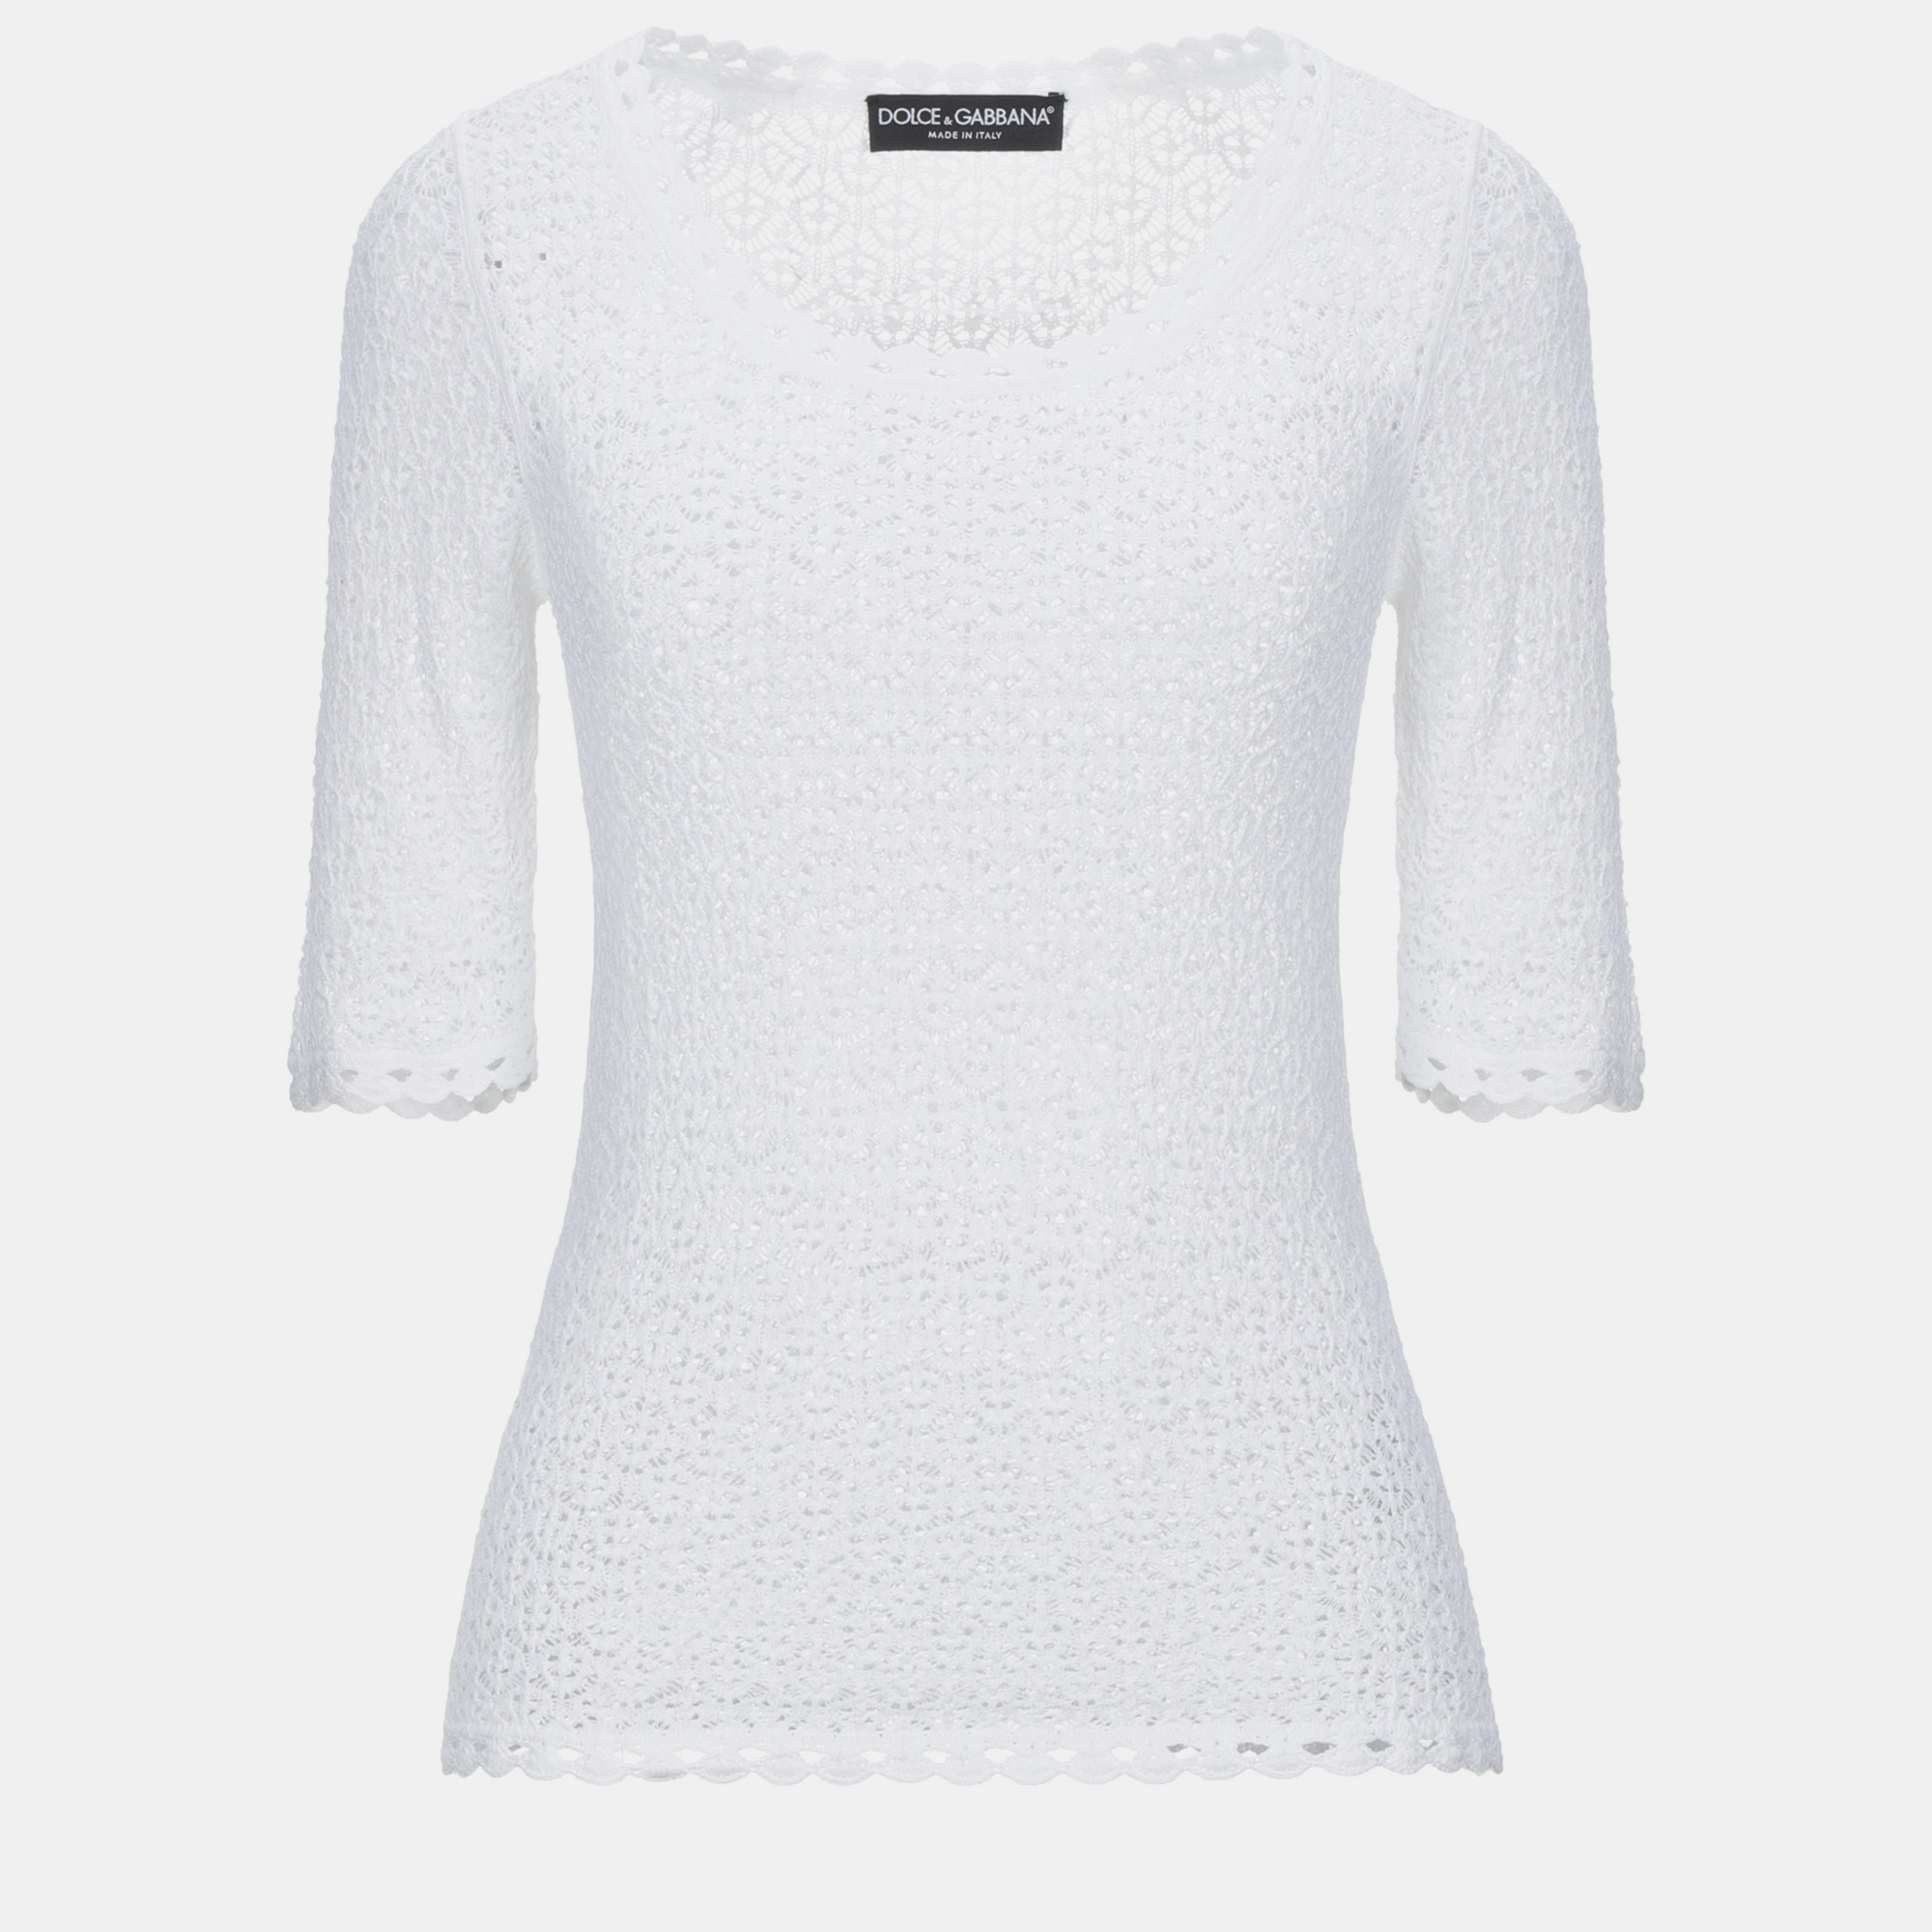 

Dolce & Gabbana Viscose Sweater IT 40, White